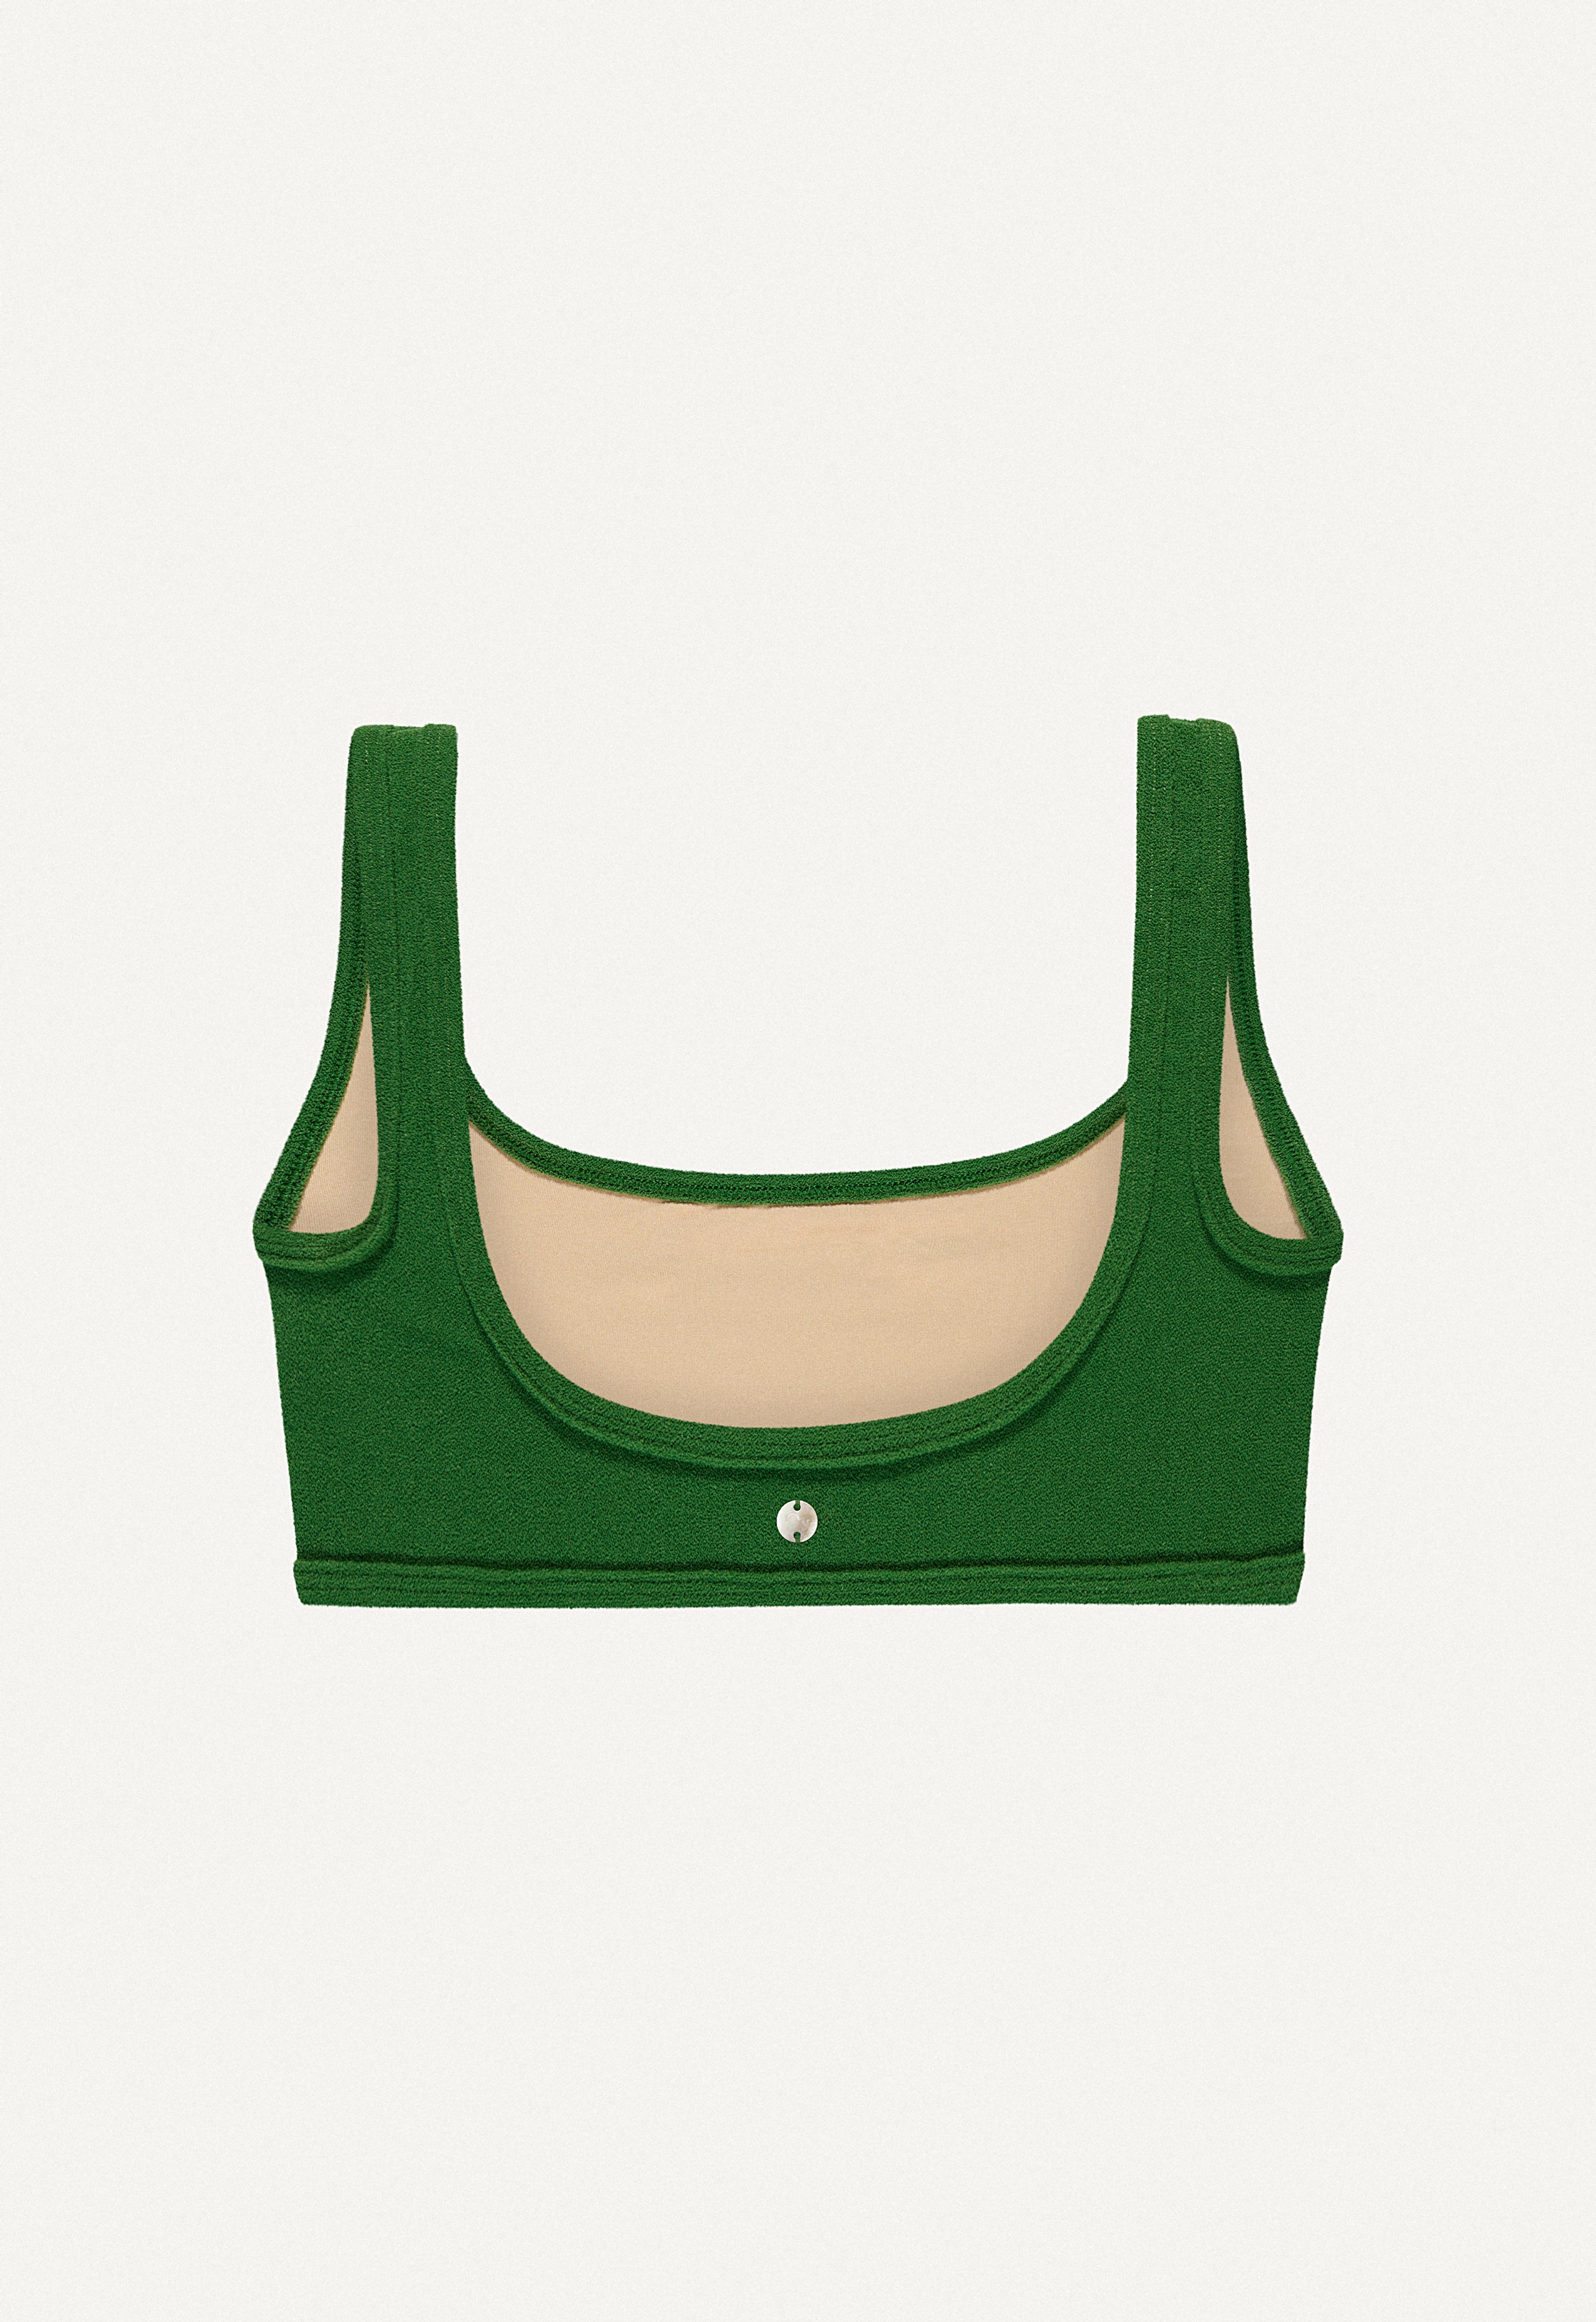 Bikini Top “Vento” in dark green terry